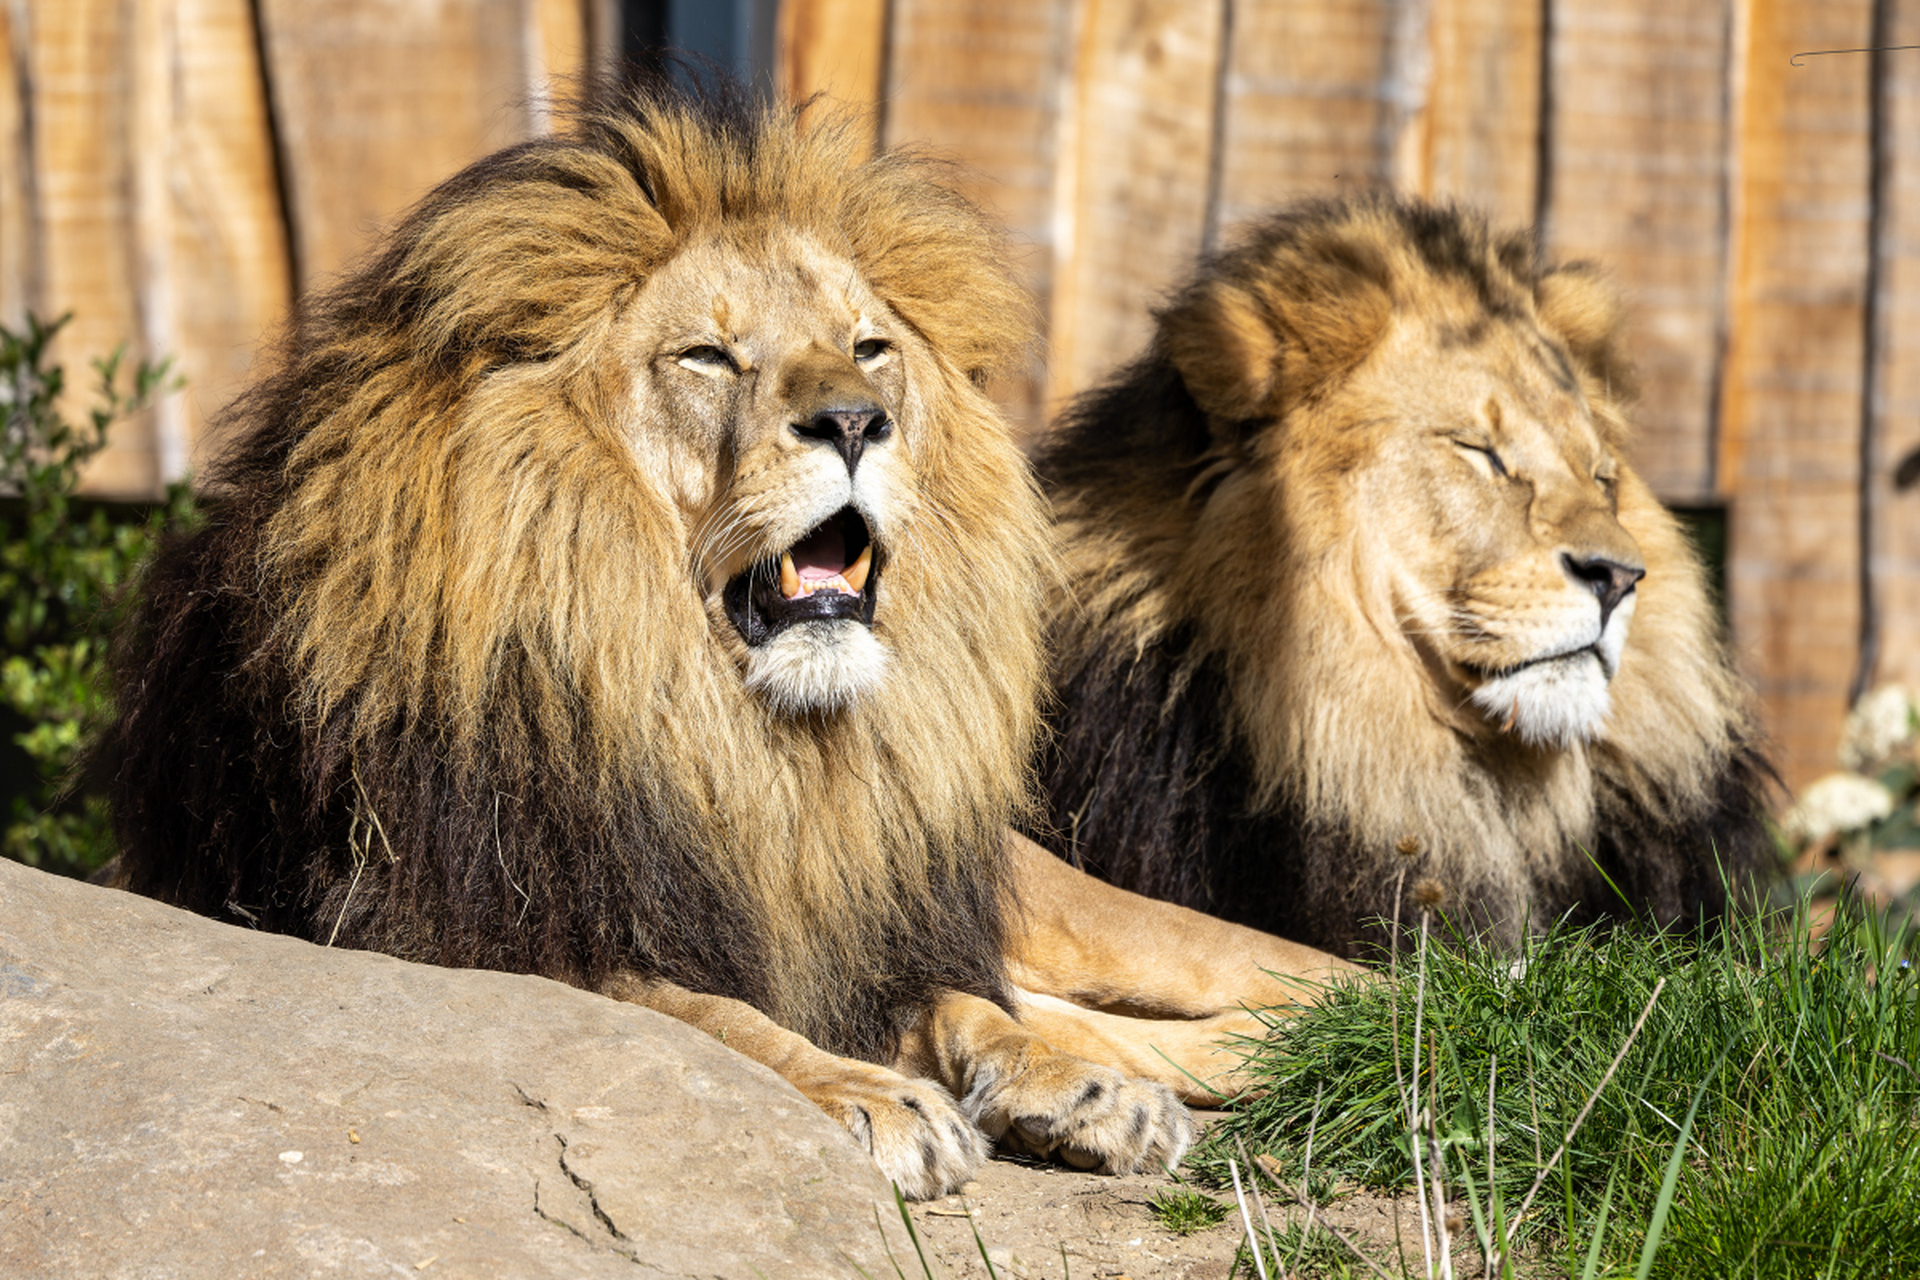 狮子以群居方式生存,依赖群体力量捕猎和保护领地